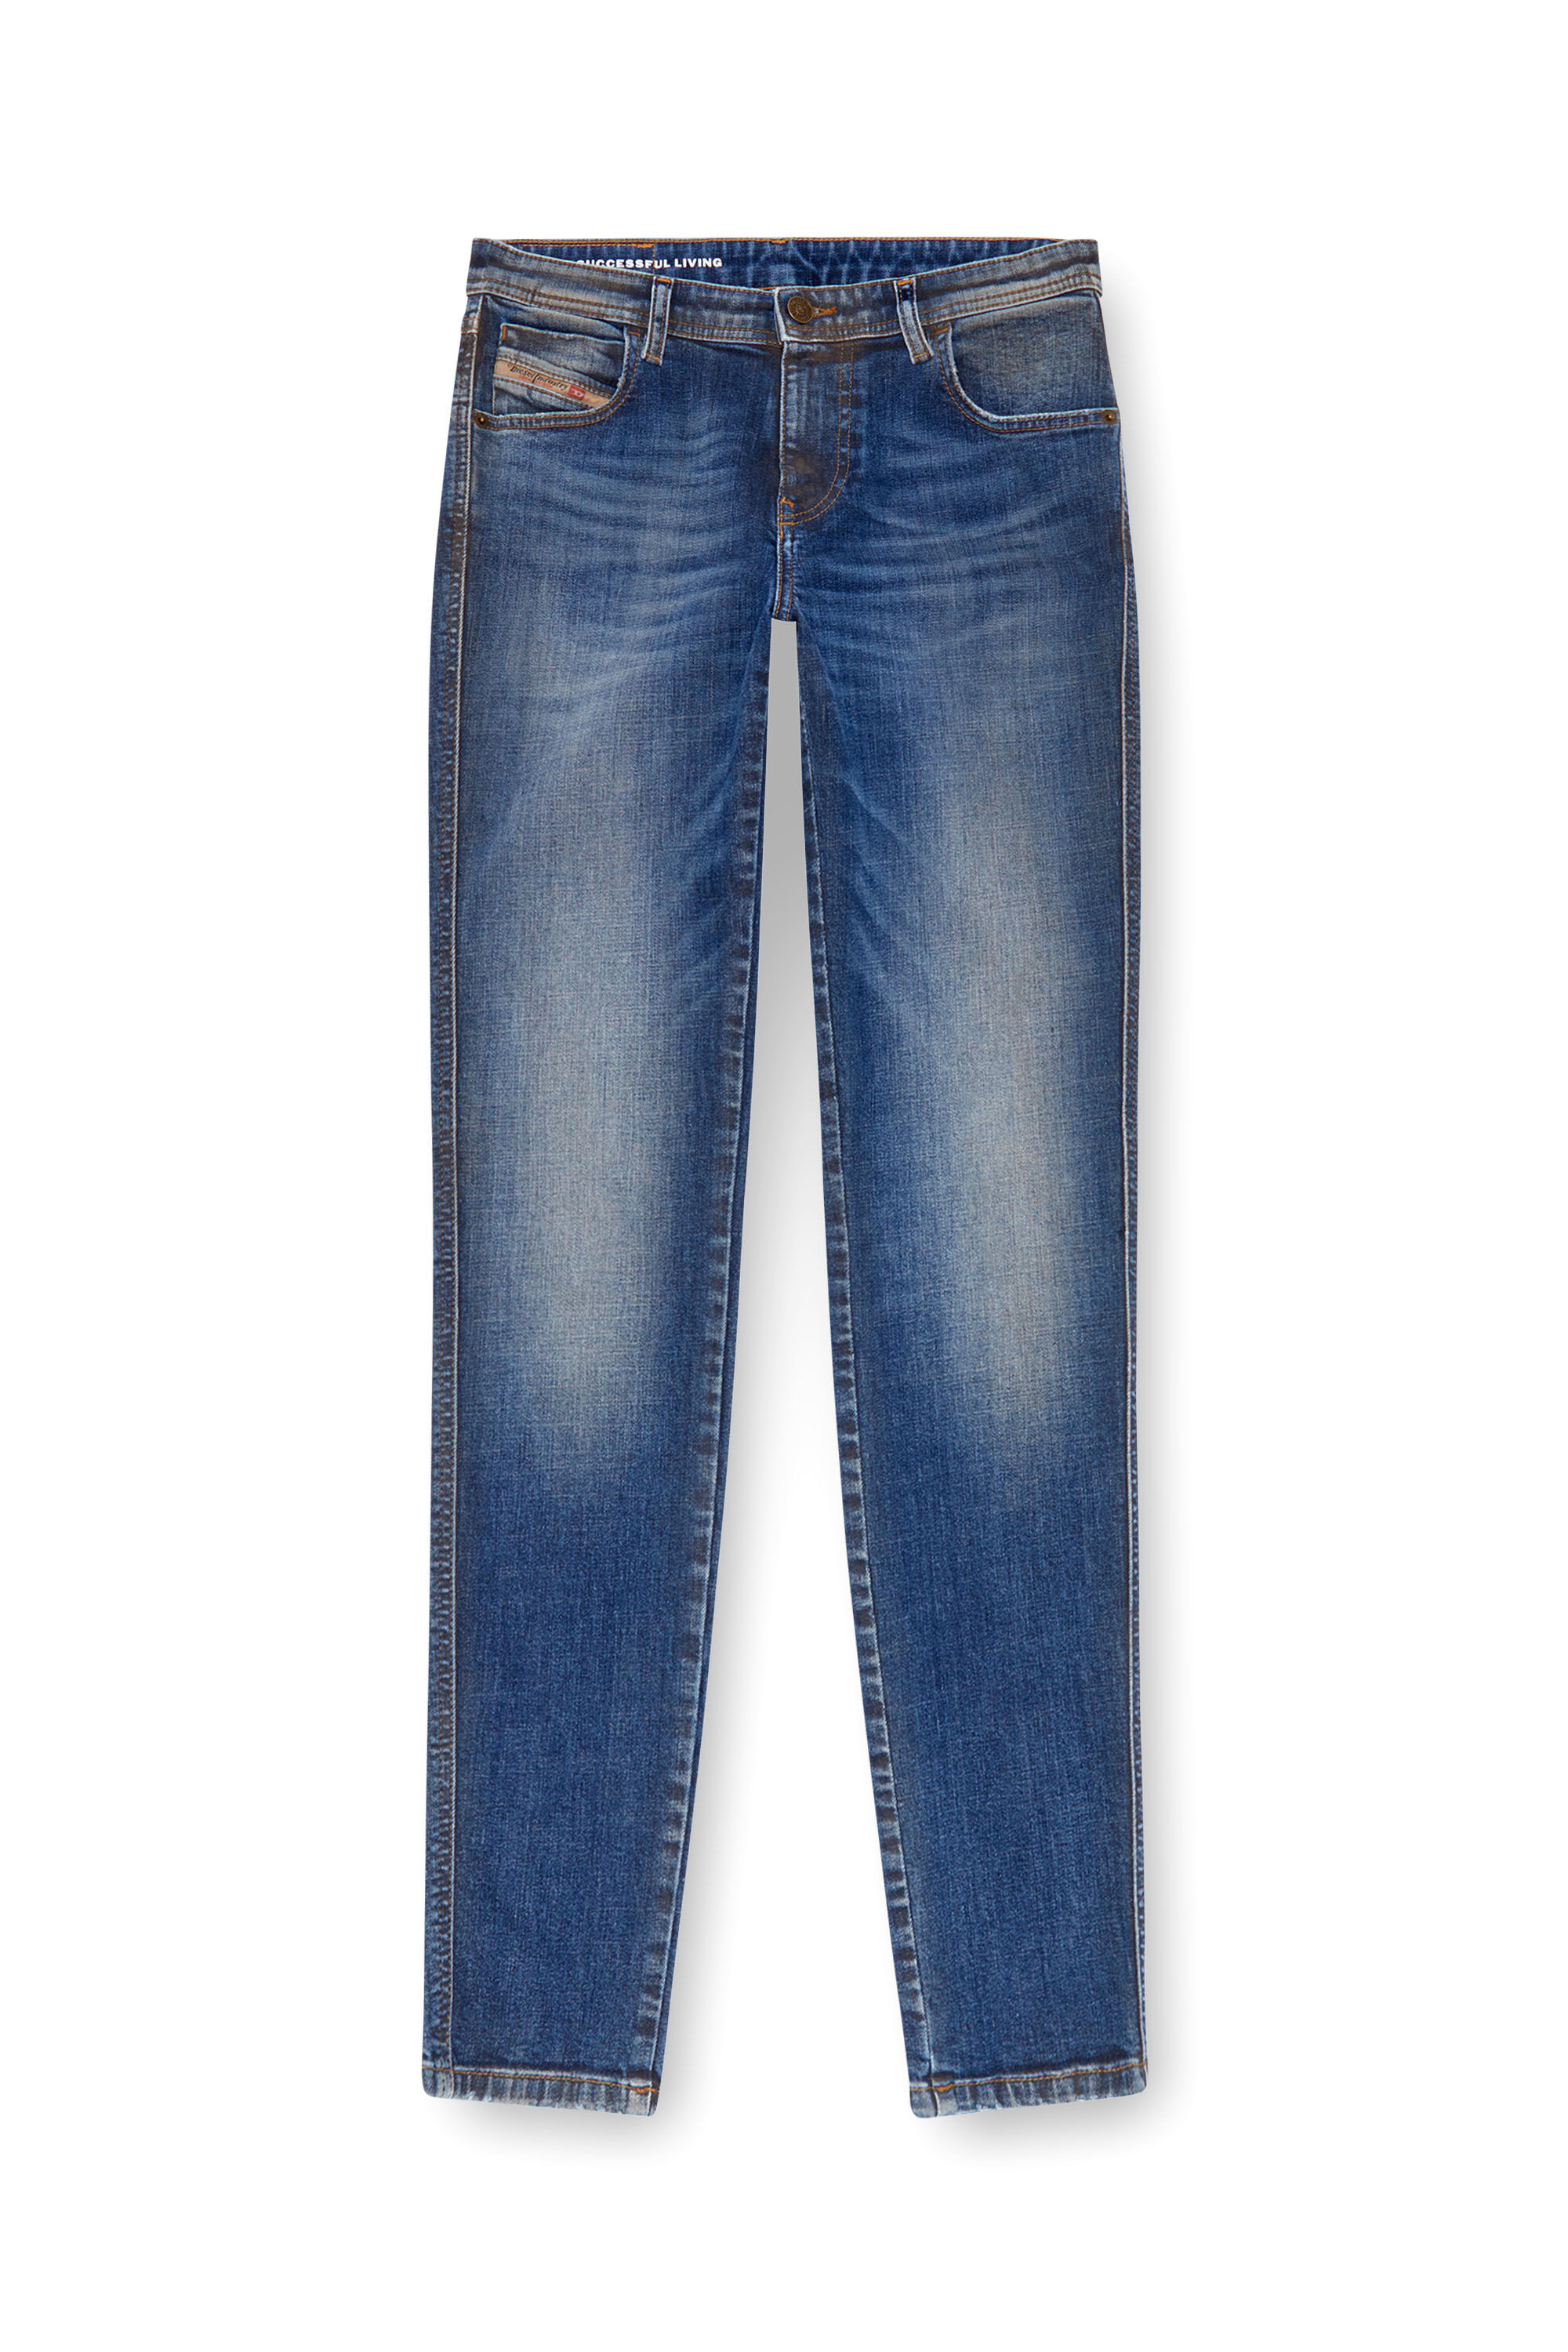 Diesel - Skinny Jeans 2015 Babhila 09J32, Mujer Skinny Jeans - 2015 Babhila in Azul marino - Image 2